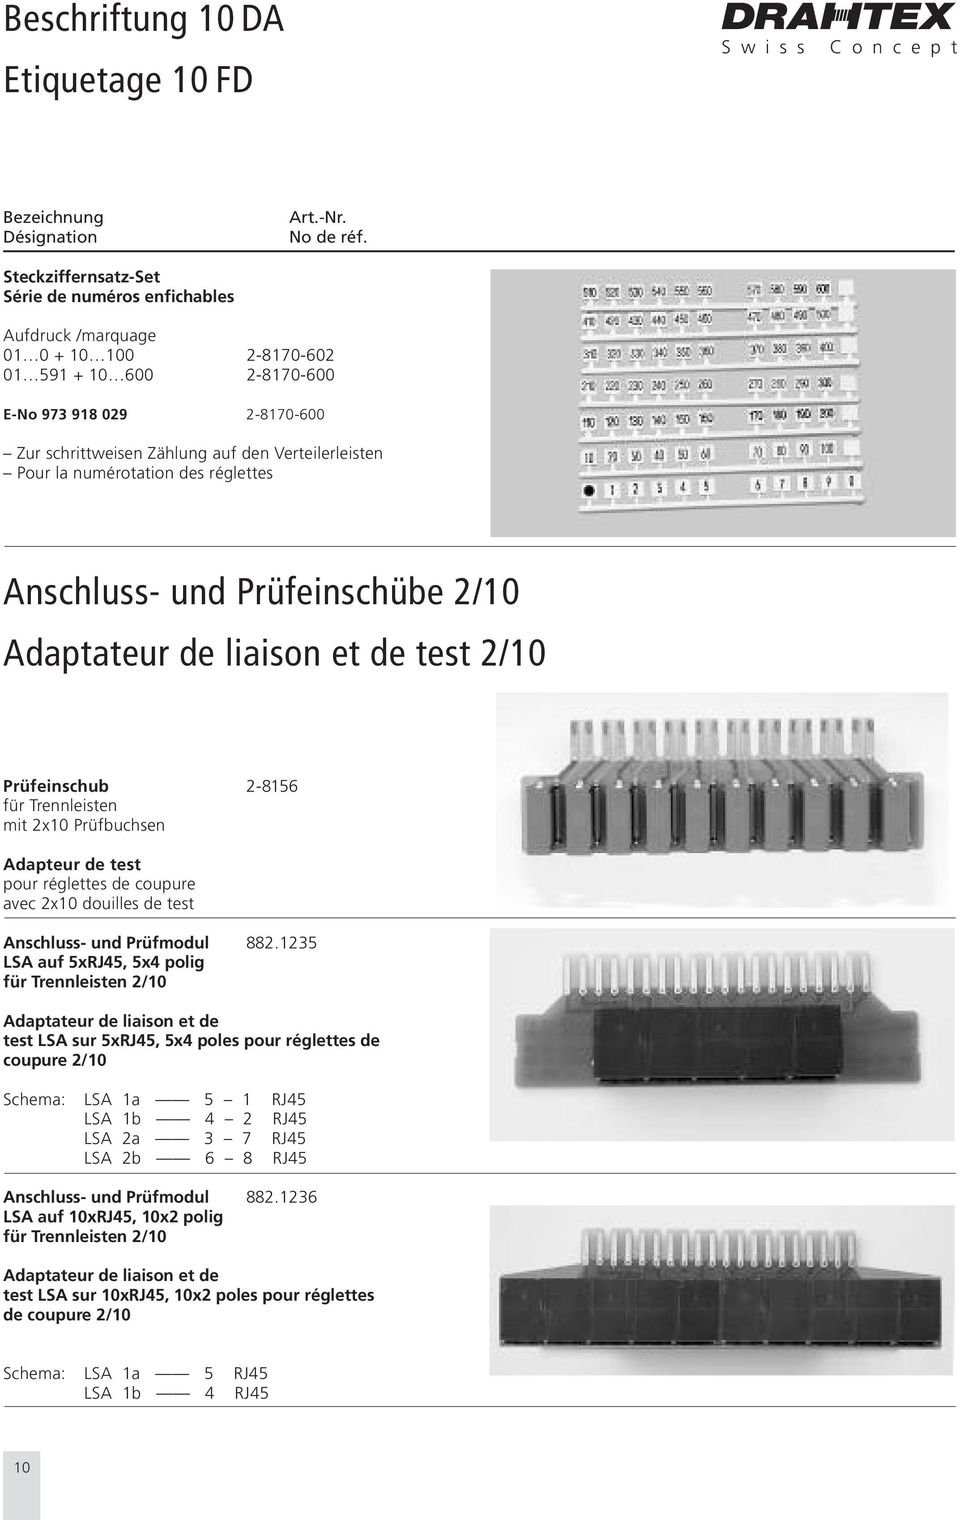 Prüfbuchsen Adapteur de test pour réglettes de coupure avec 2x10 douilles de test Anschluss- und Prüfmodul 882.